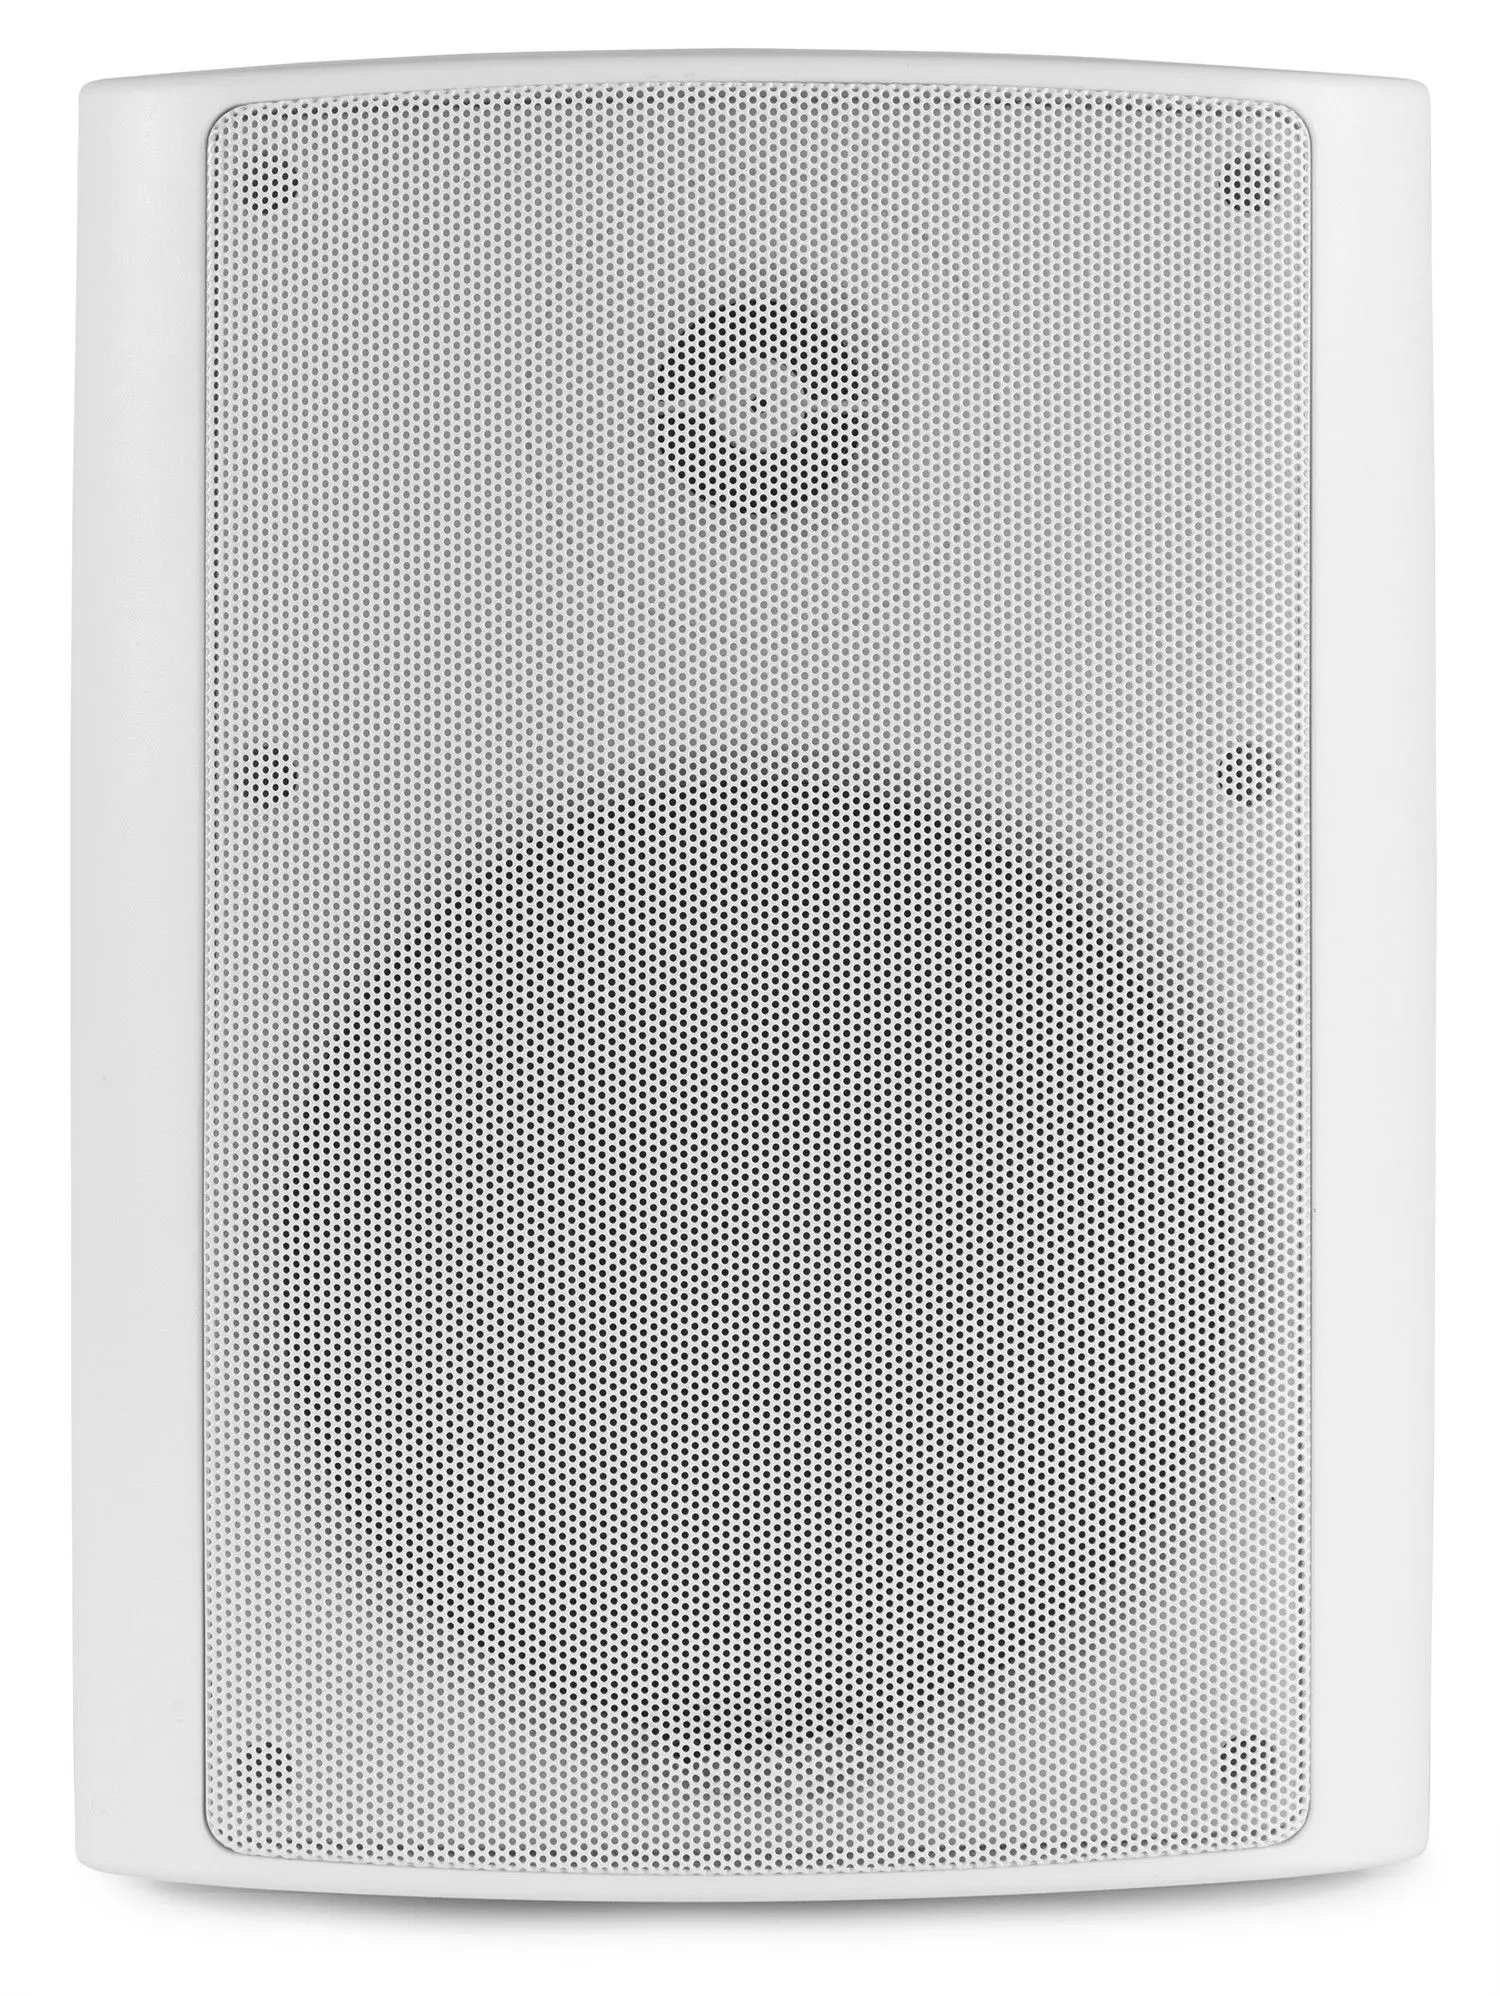 Power dynamics wit buitenspeakers|installatie speakers|retourdeals